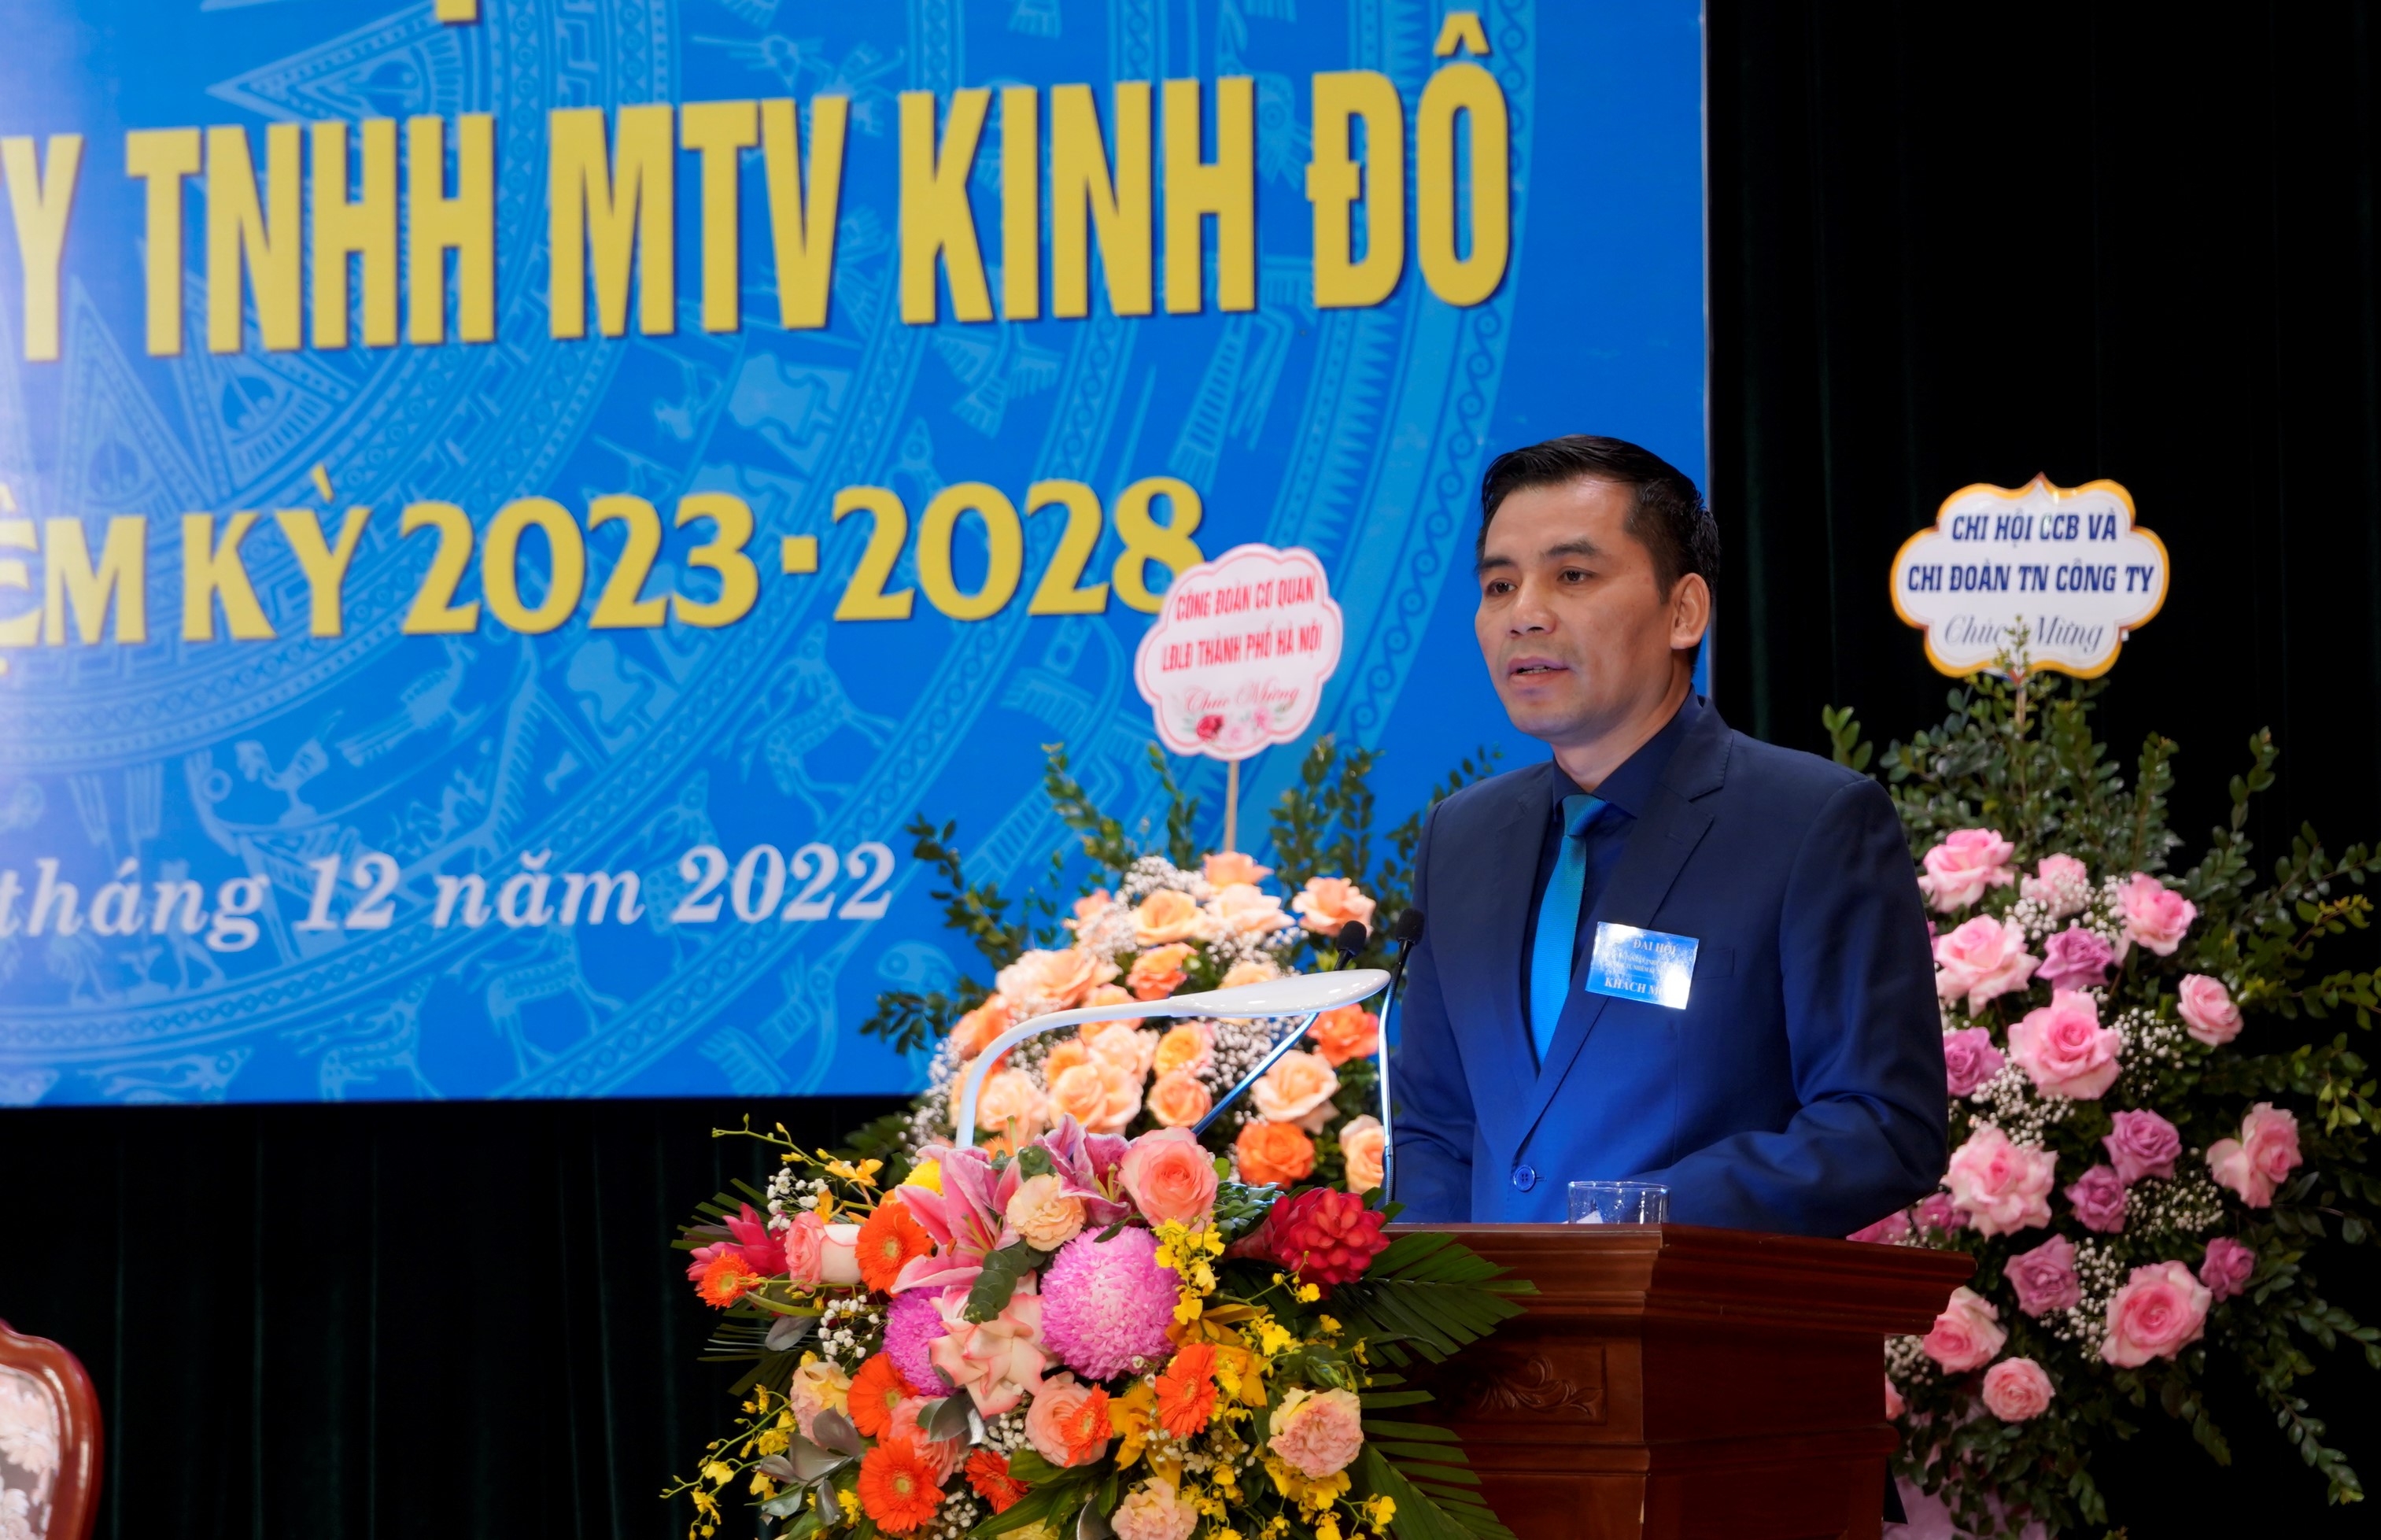 Công đoàn Công ty TNHH MTV Kinh Đô: Phối hợp với chuyên môn chăm lo tốt cho người lao động